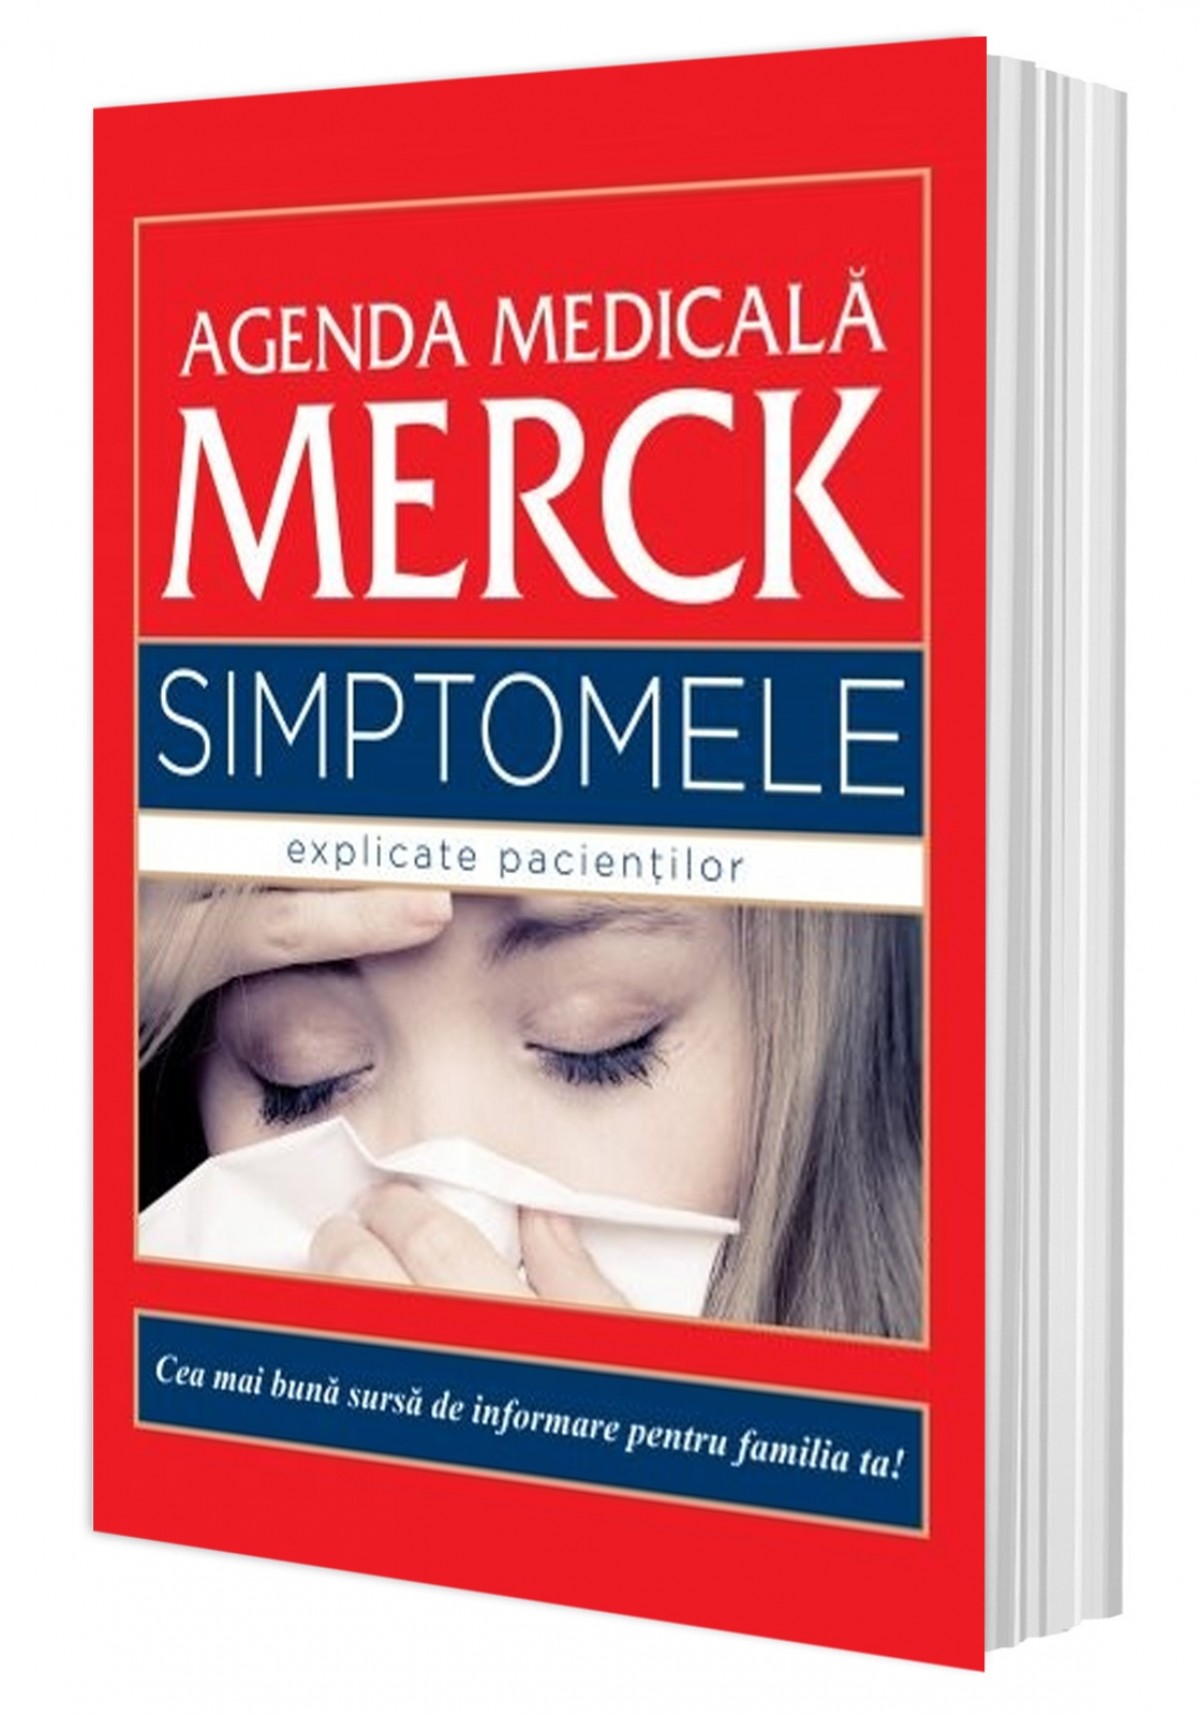 Agenda Medicală Merck. Simptomele explicate pacientilor